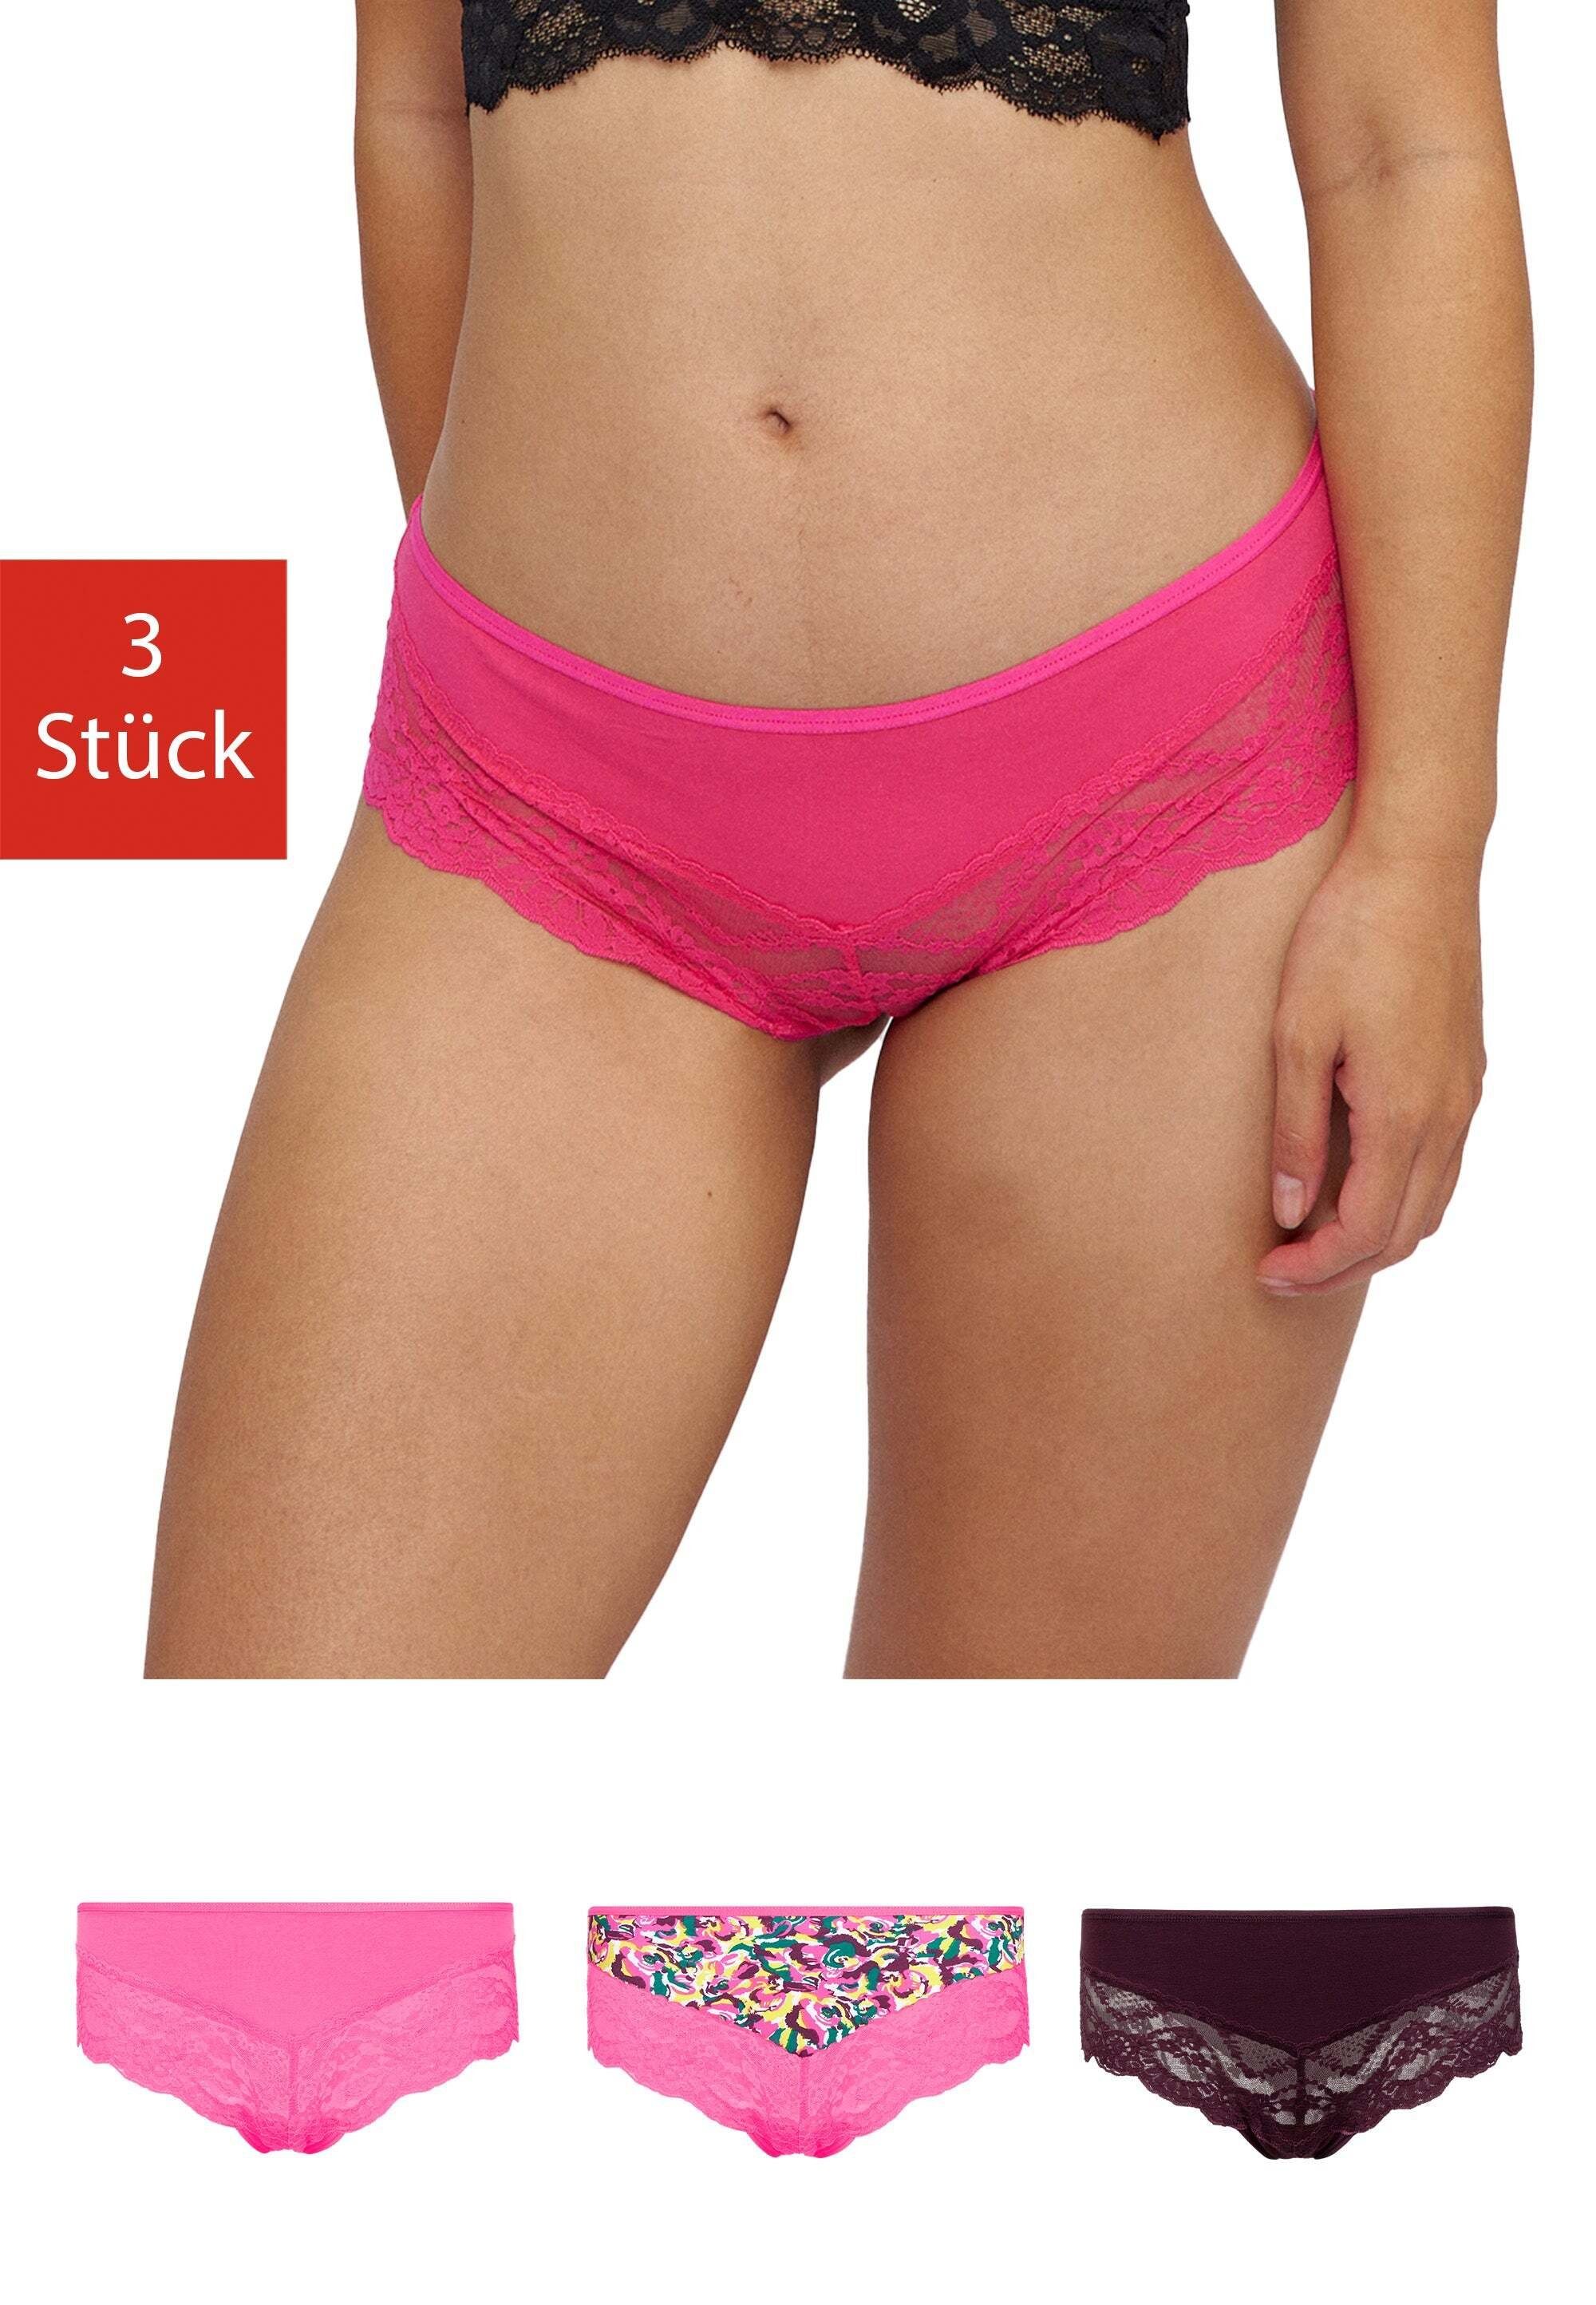 SNOCKS Hipster Unterwäsche Damen Slip Unterhosen (3-St) mit Spitze, bequem und elegant Mix Print (Rosa/Lila)